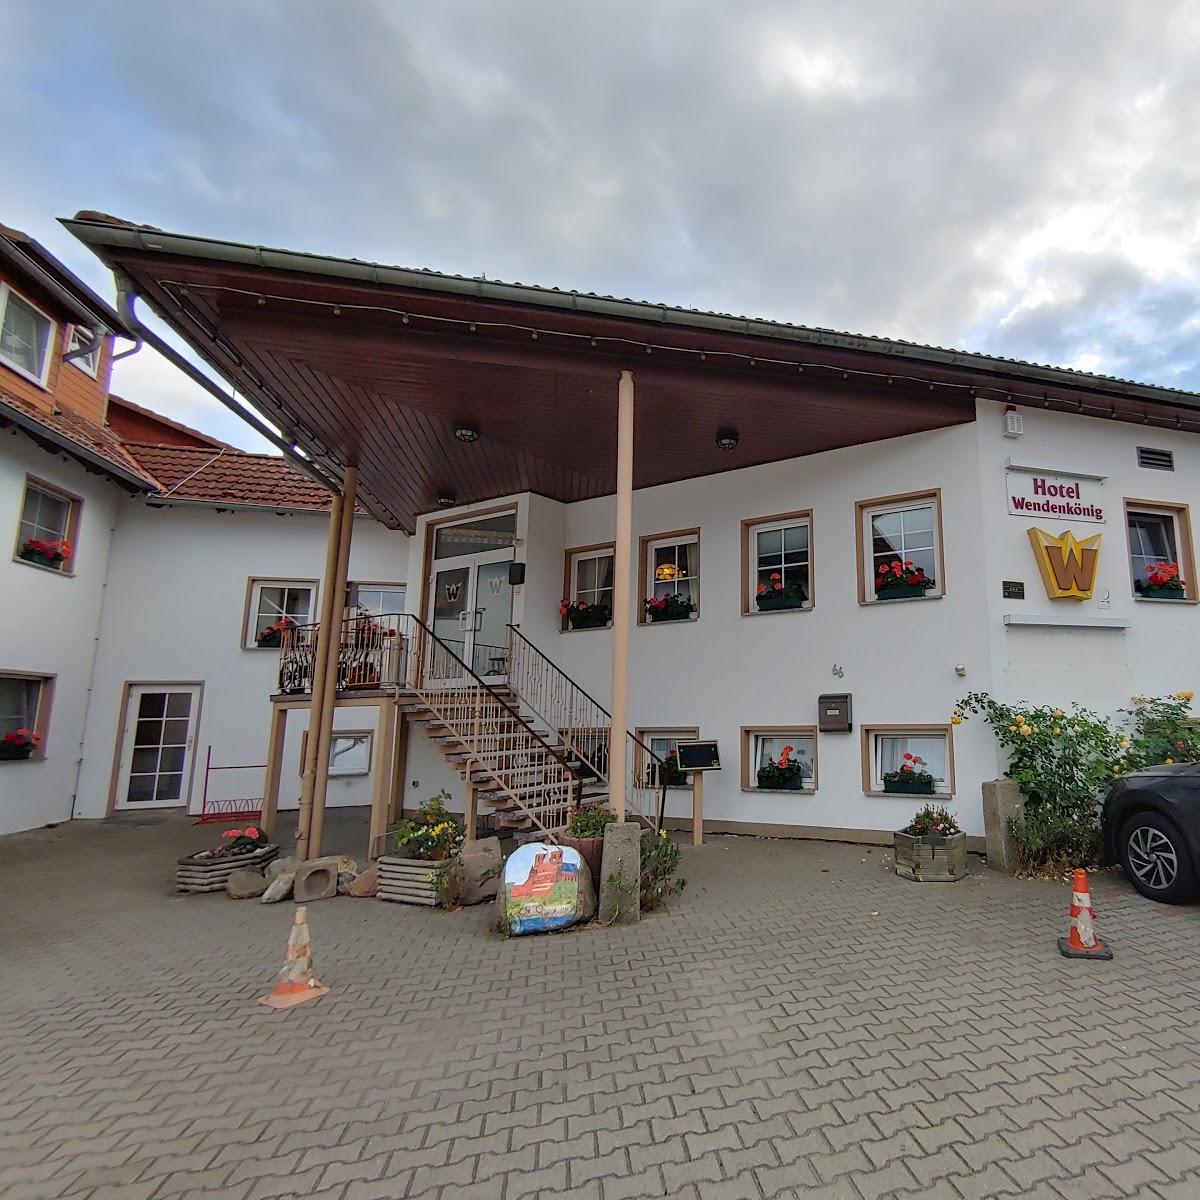 Restaurant "Hotel Wendenkönig" in Prenzlau